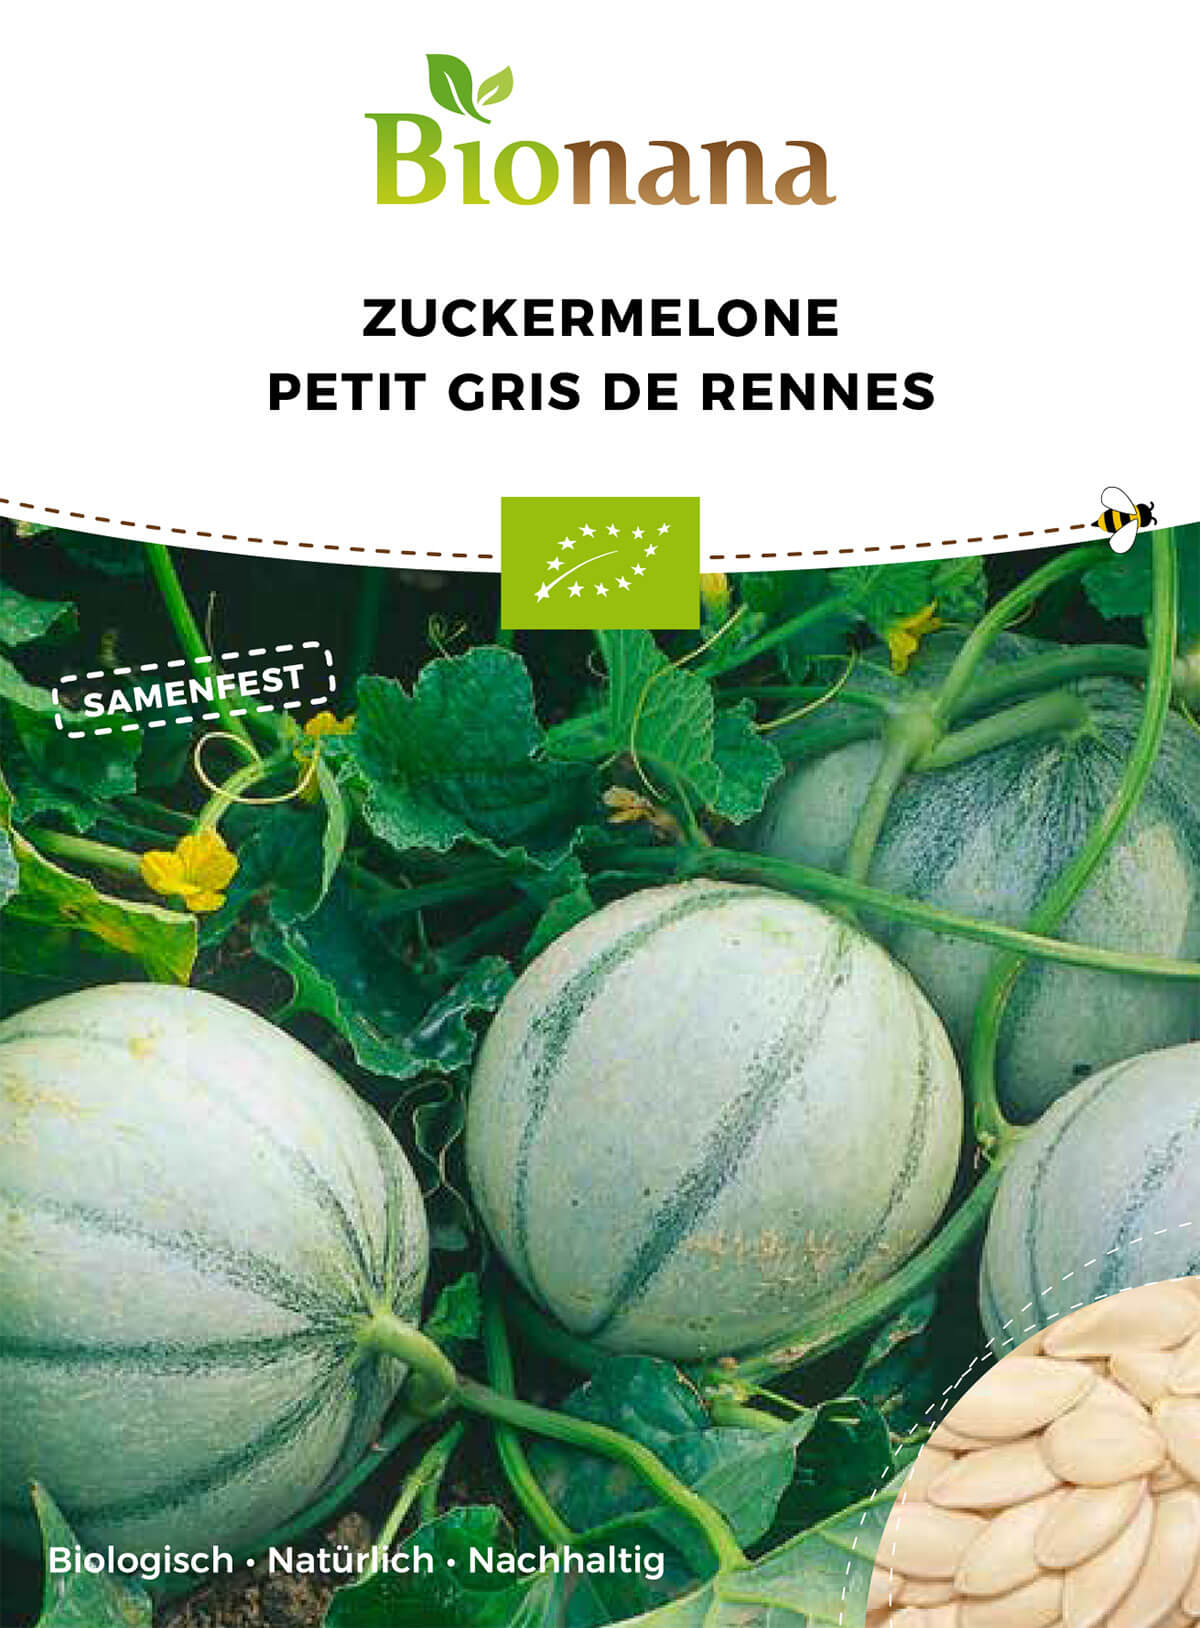 Zuckermelone Petit Gris de Rennes | BIO Zuckermelonensamen von Bionana